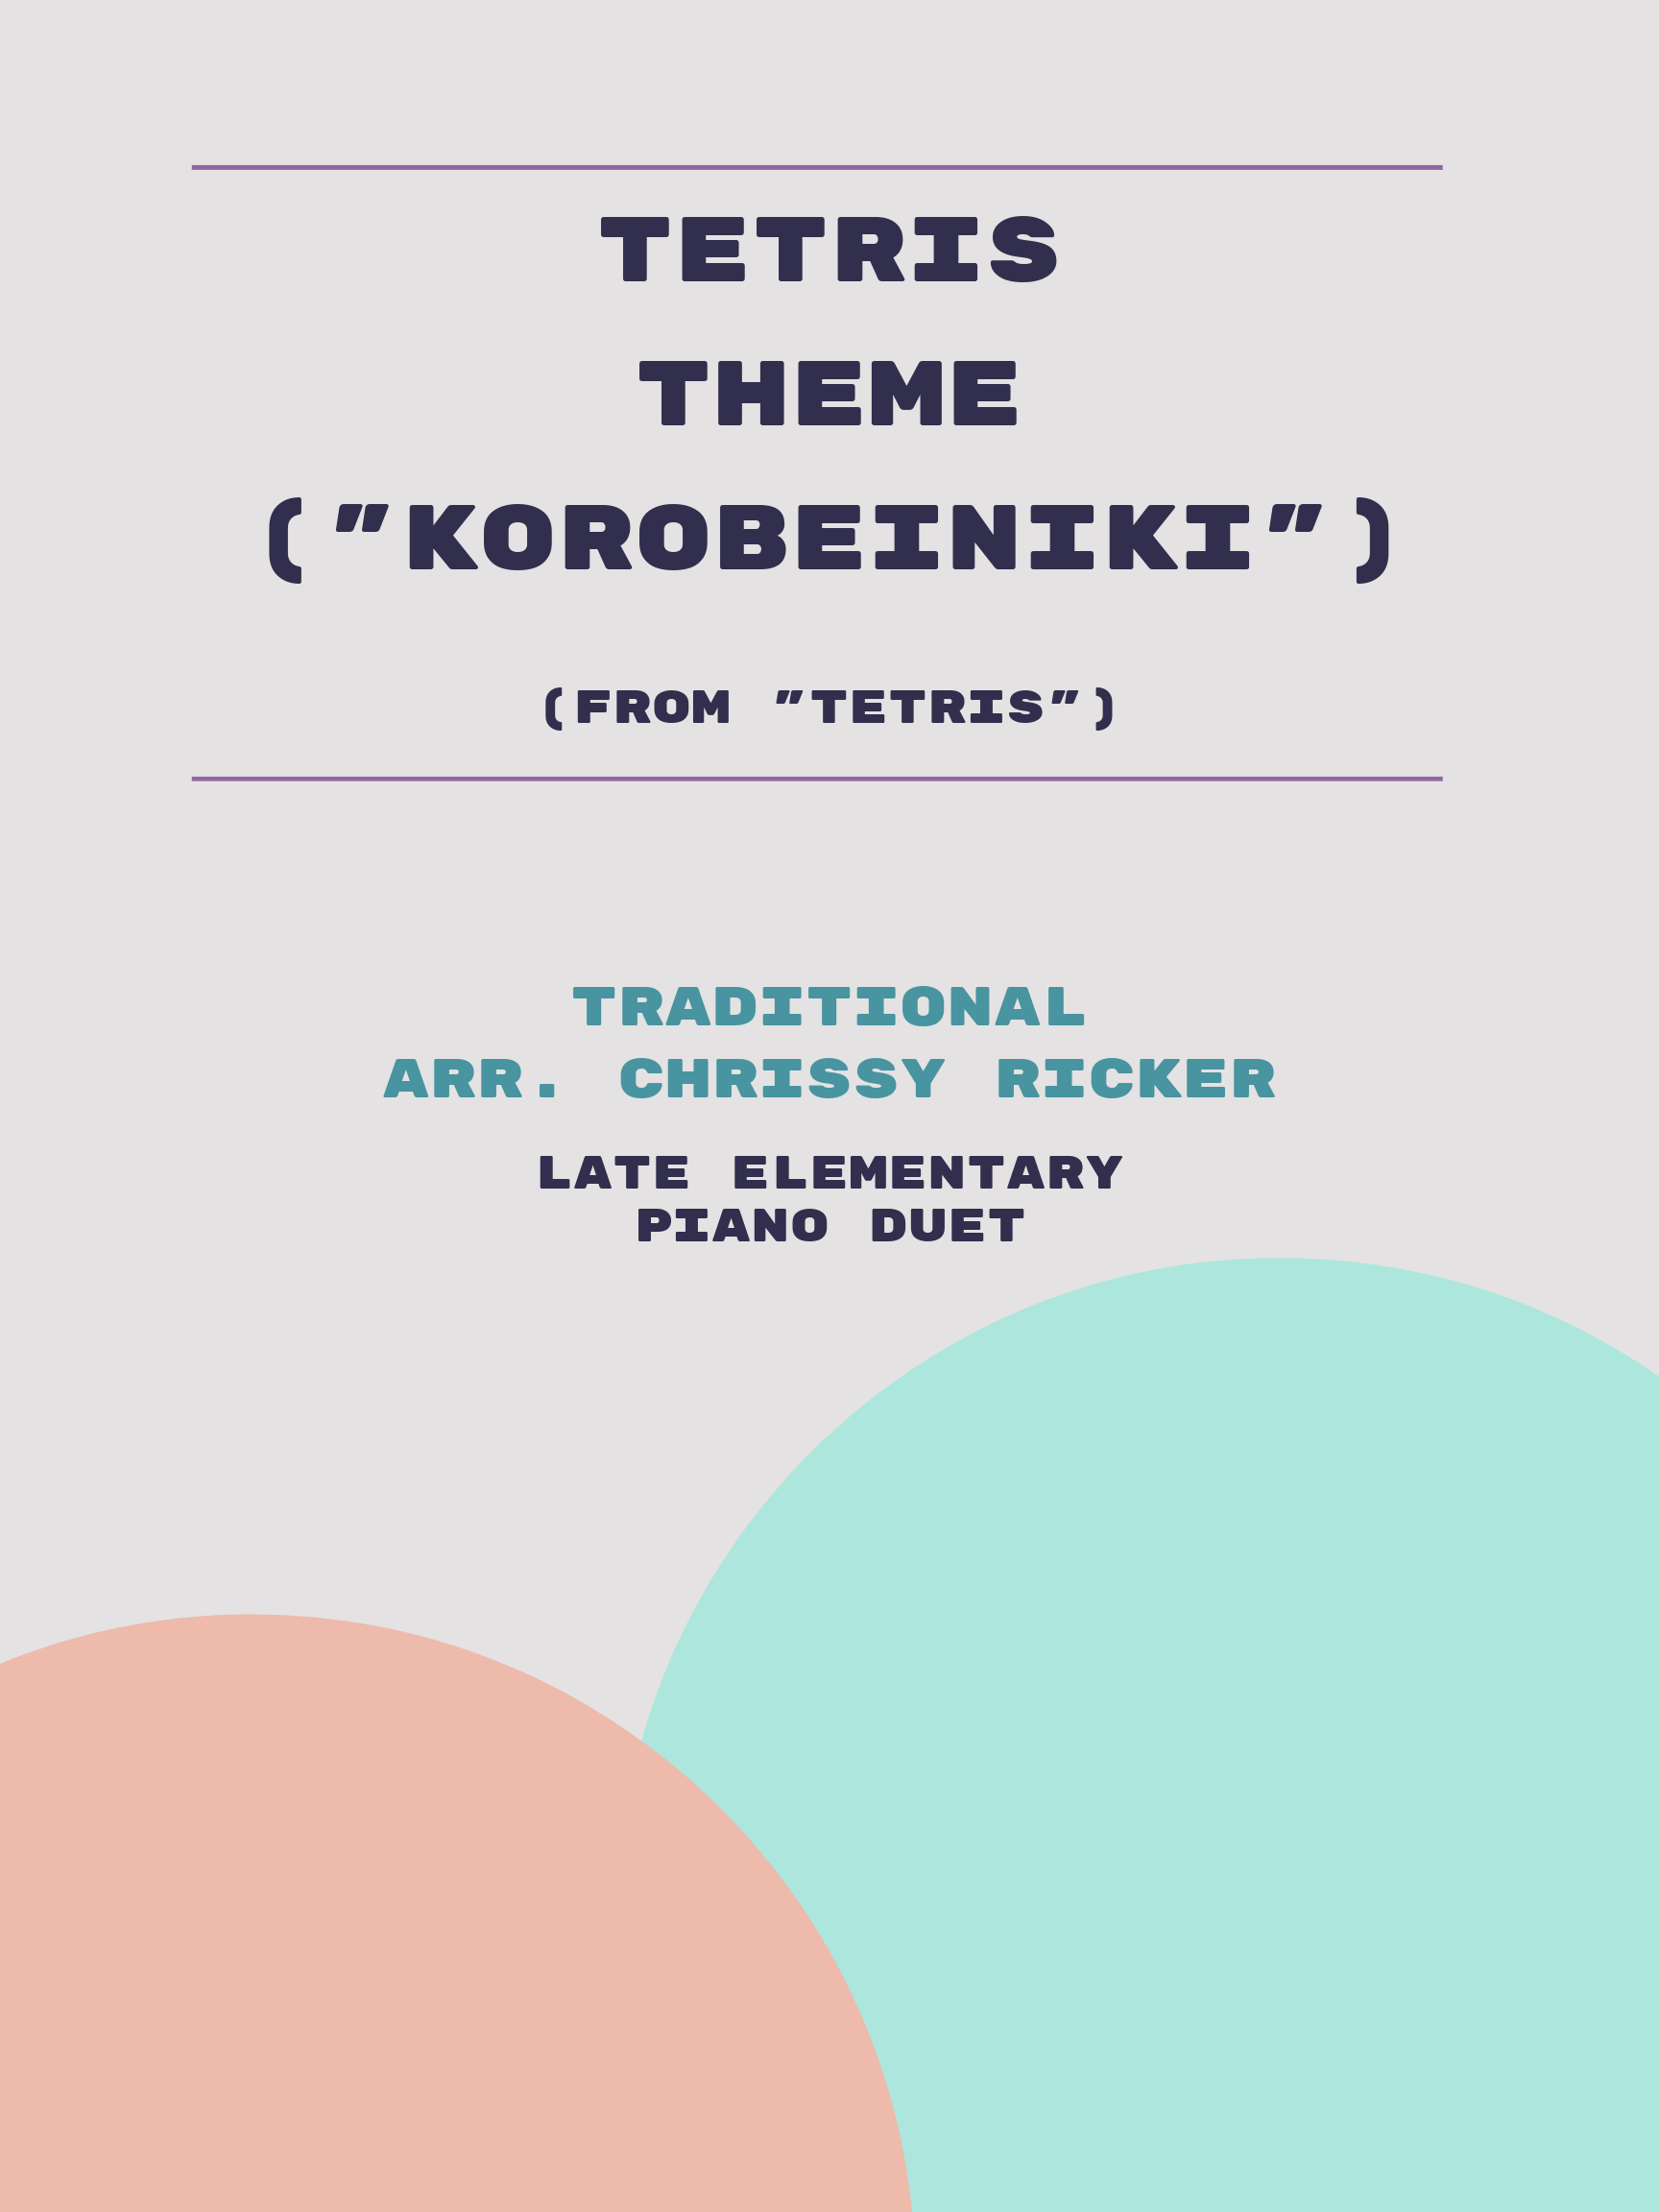 Tetris Theme ("Korobeiniki") Sample Page